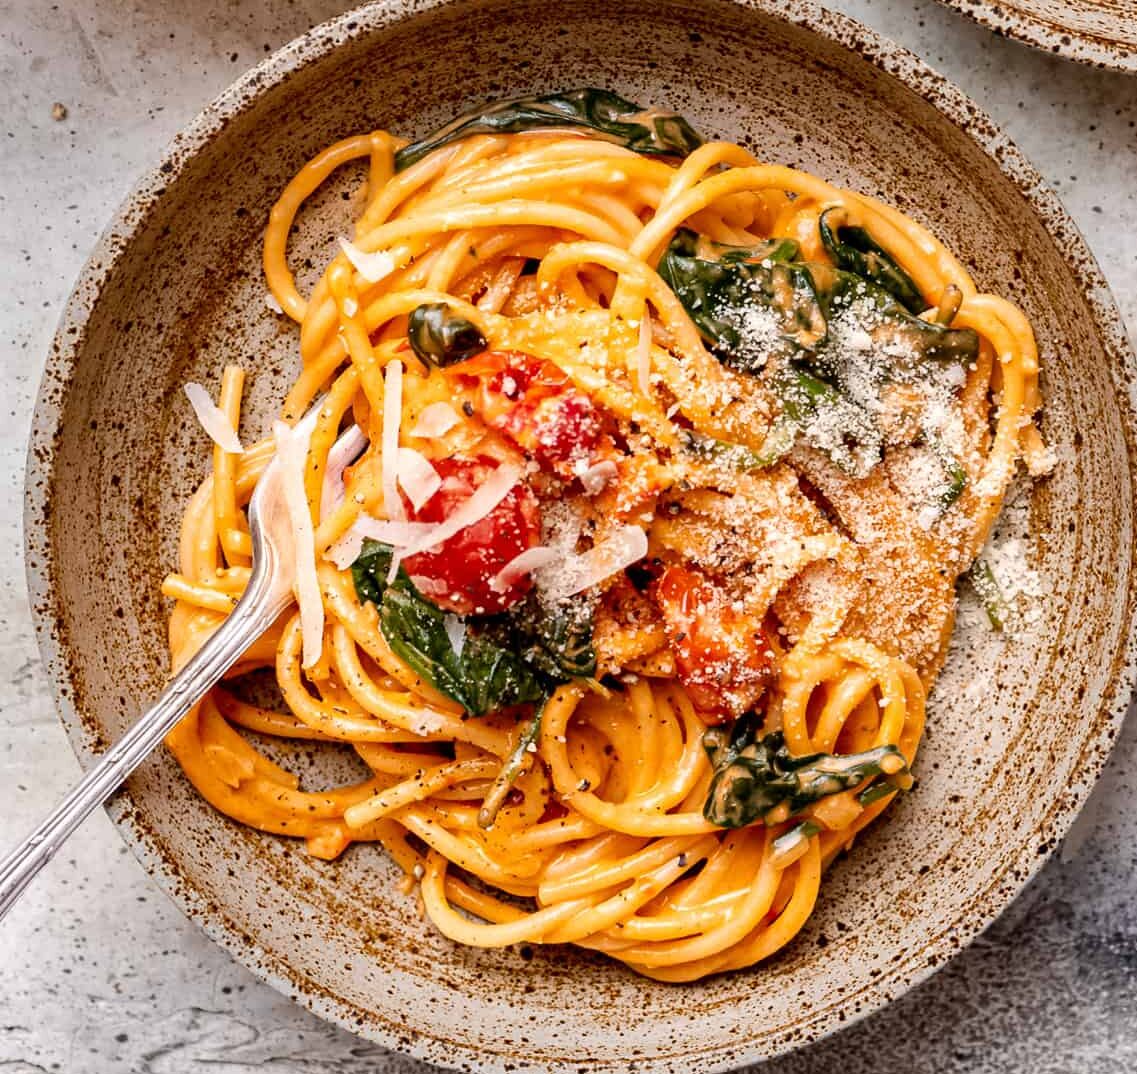 Creamy mascarpone tomato pasta in a bowl.